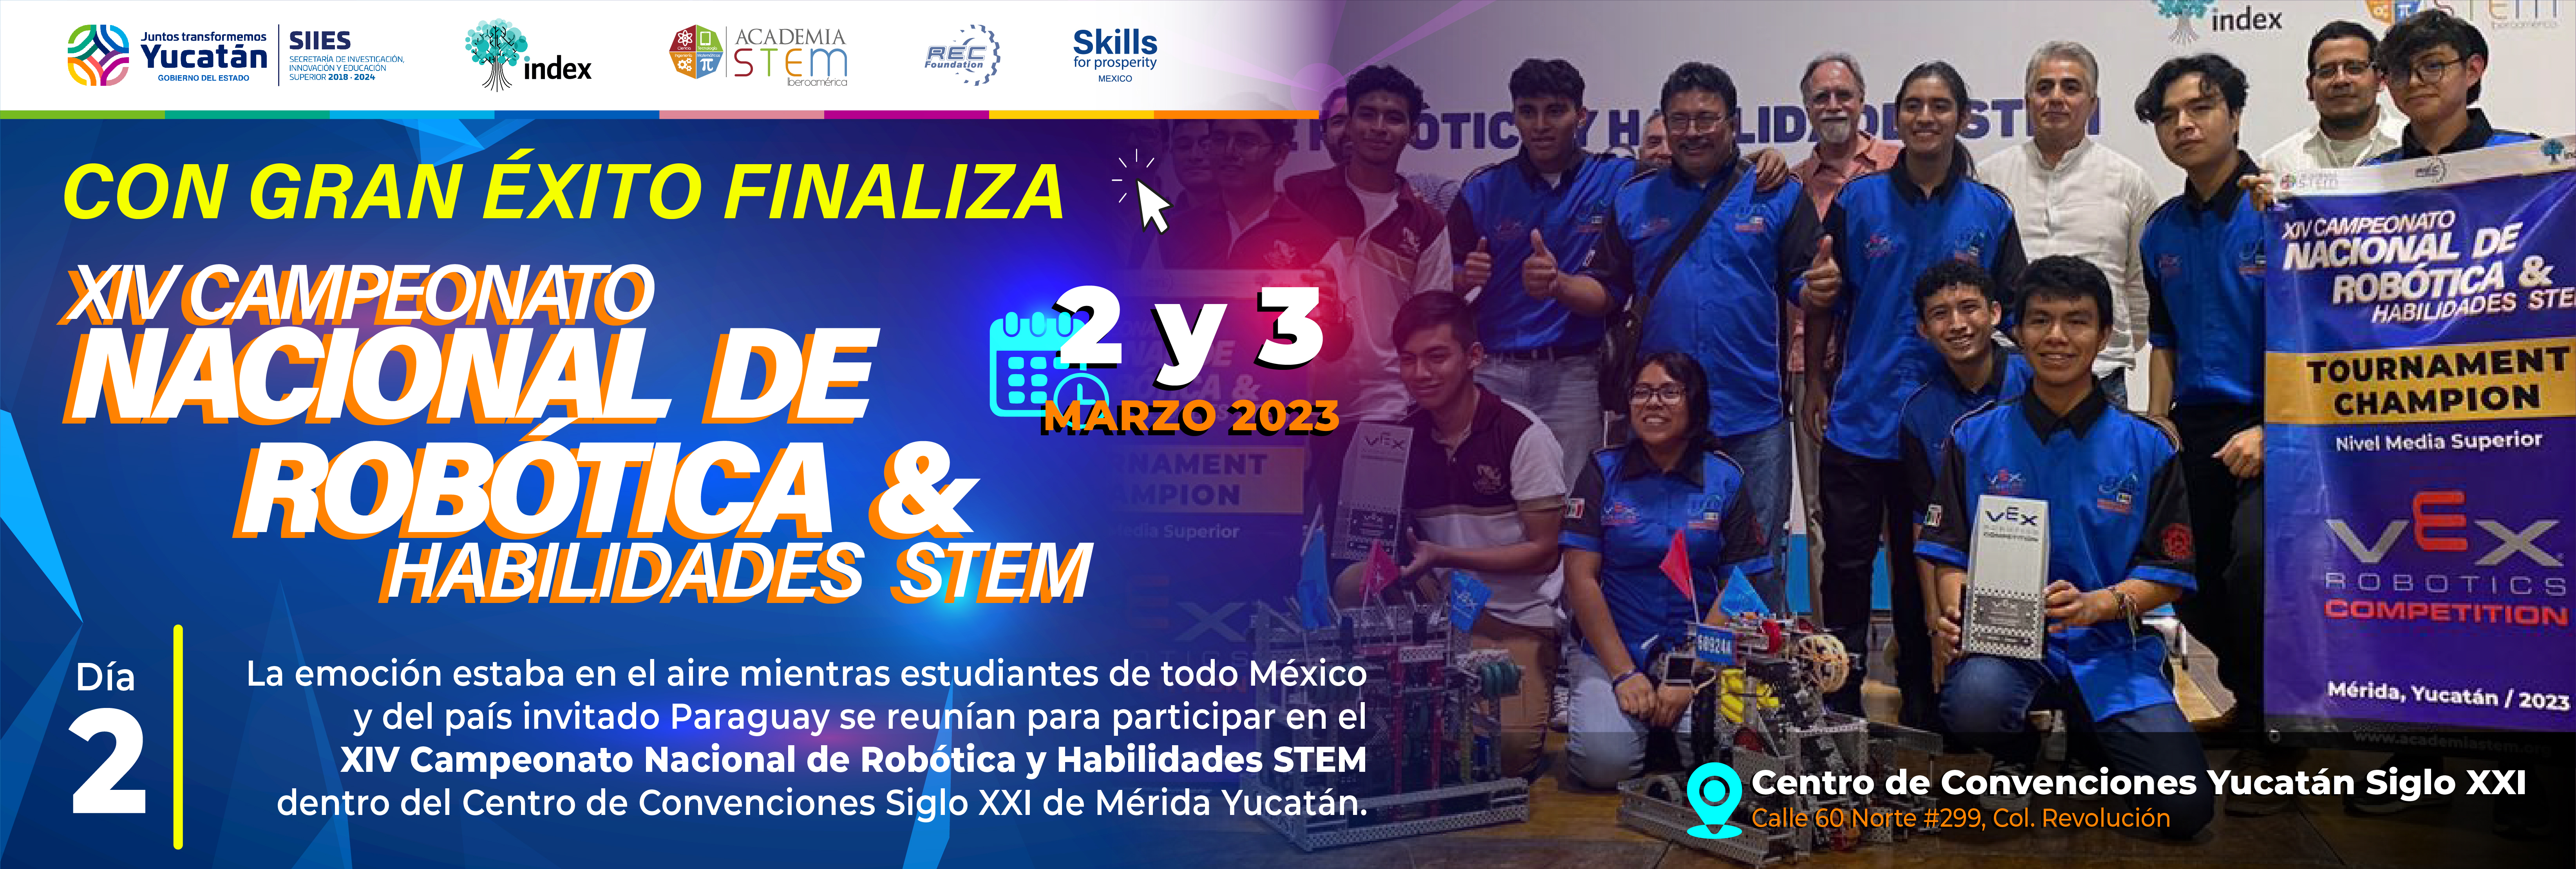 Finaliza el Campeonato Nacional de Robótica y Habilidades STEM 2023